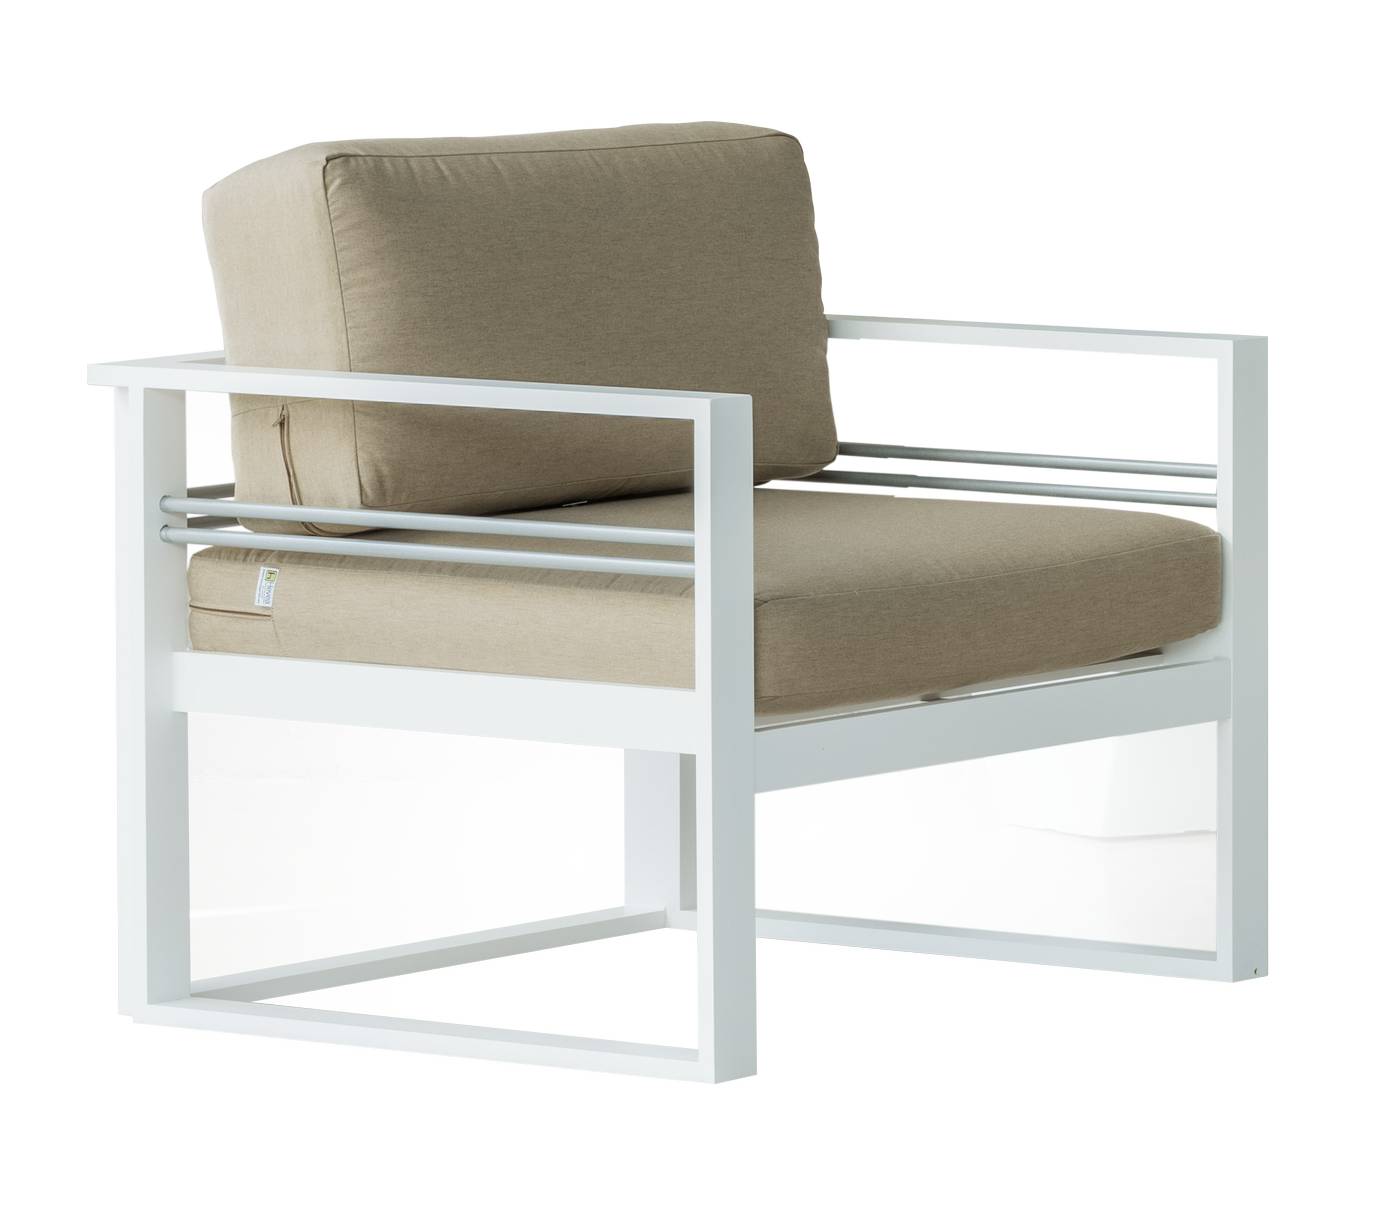 Sillón Aluminio Albourny - Sillón confort para conjunto sofá modular. Estructura aluminio color blanco.